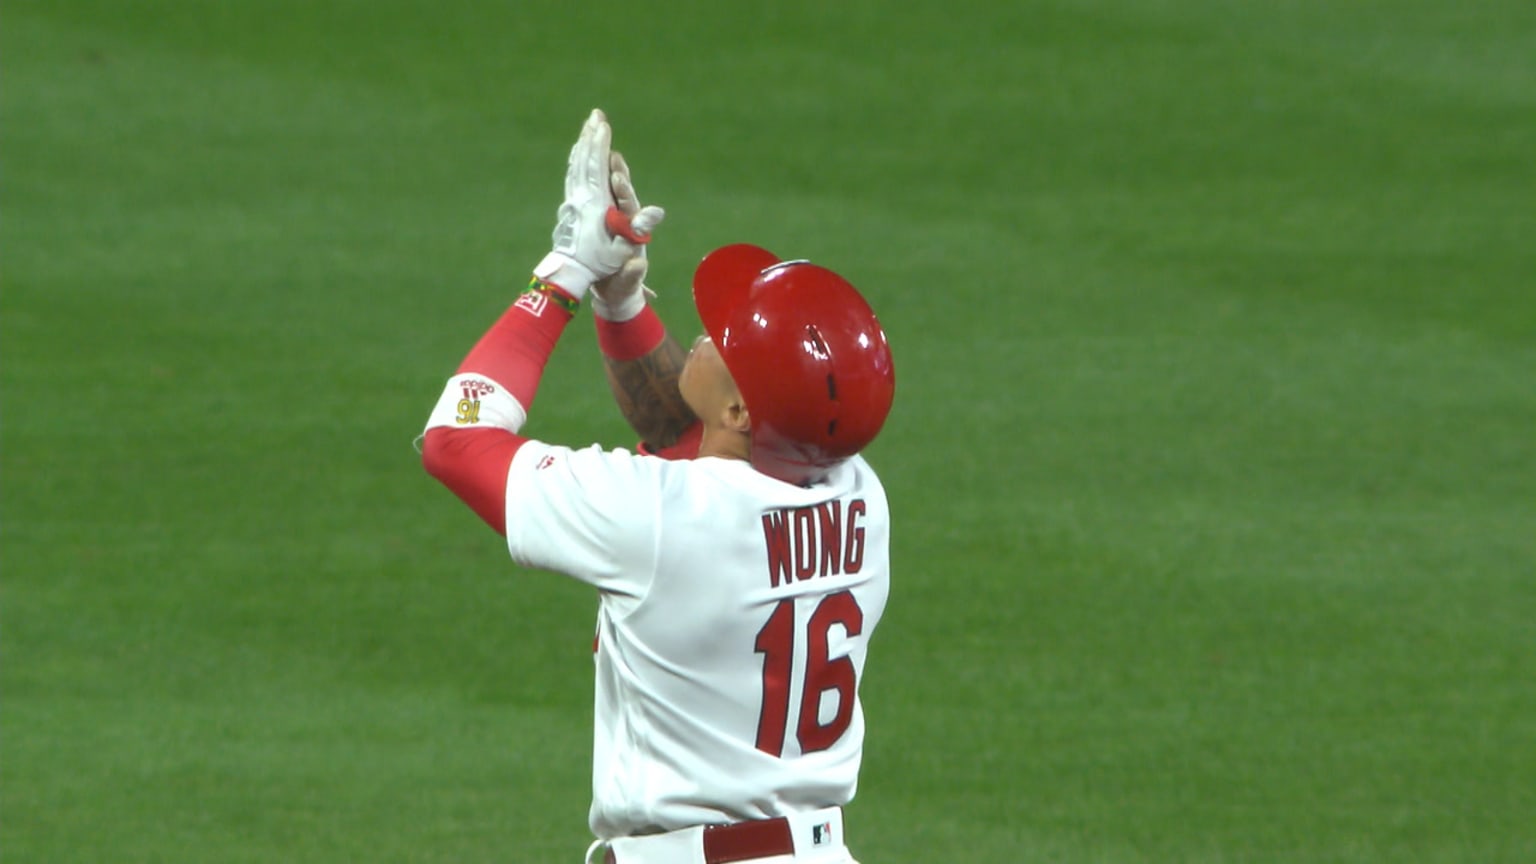 Wong&#39;s RBI double | 05/10/2019 | St. Louis Cardinals